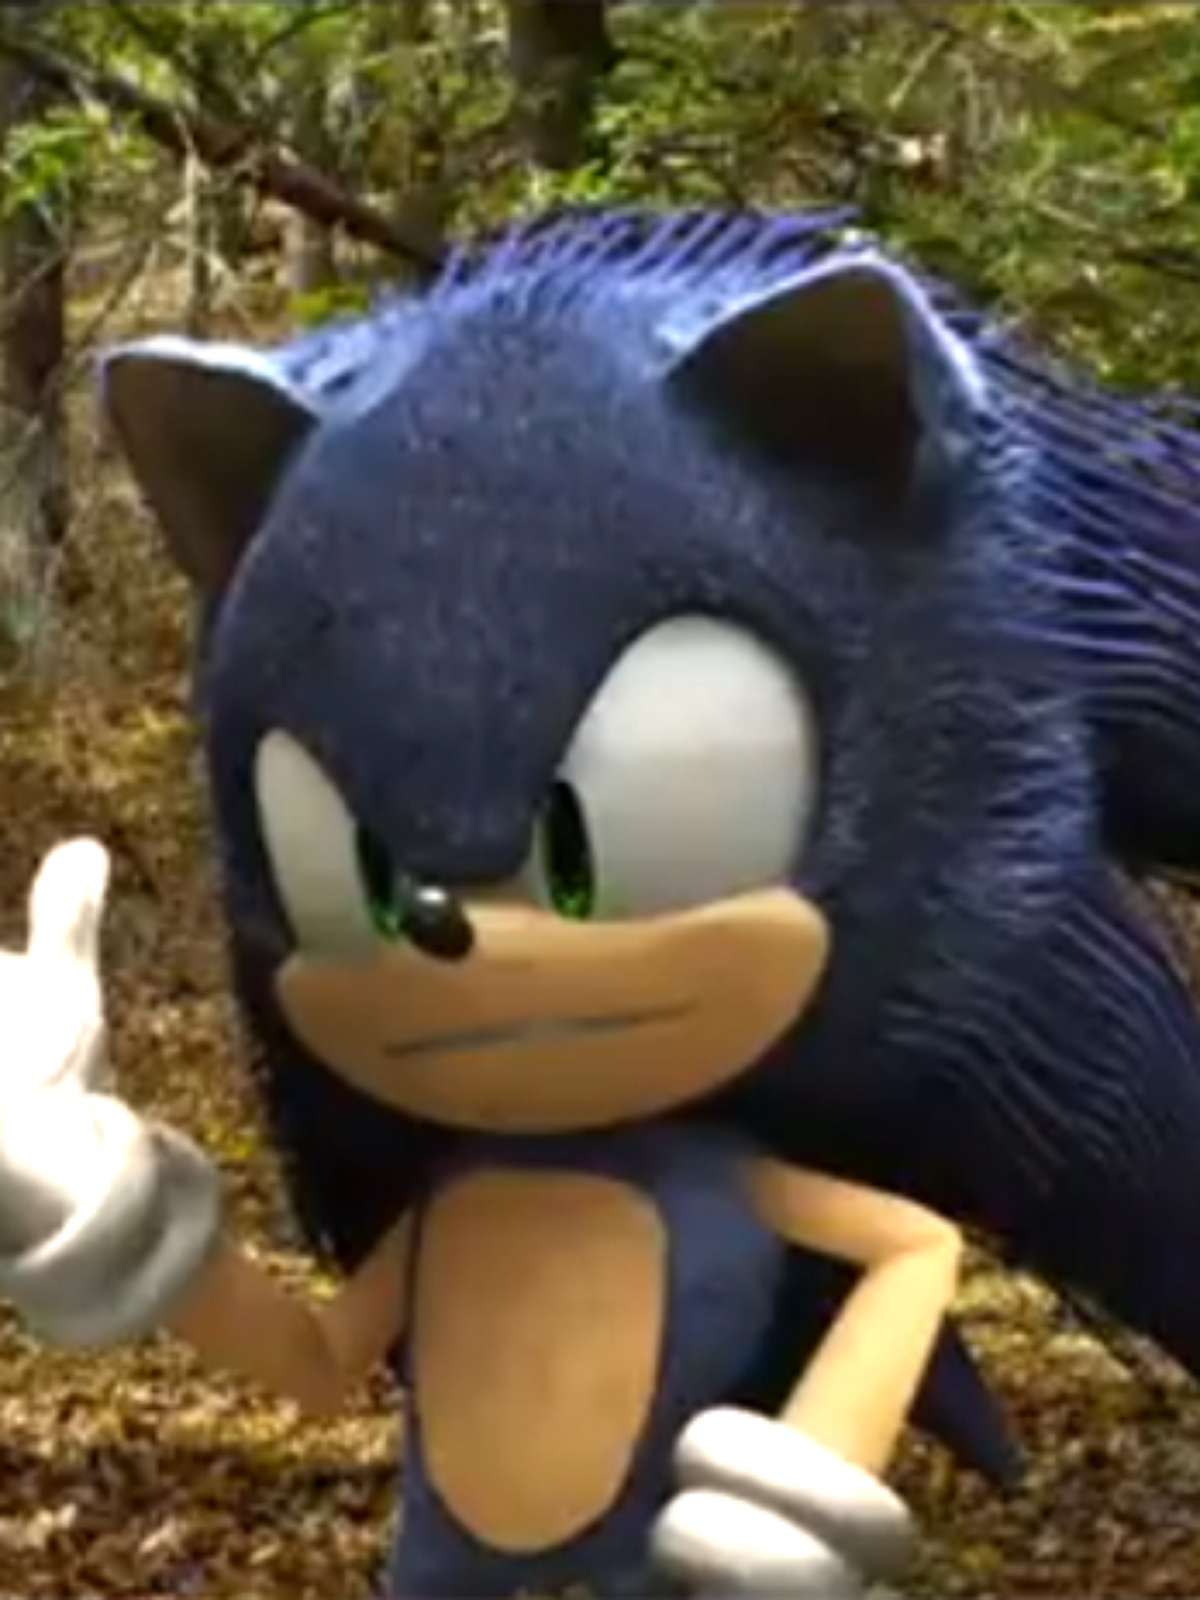 Sonic o filme feito por fãs